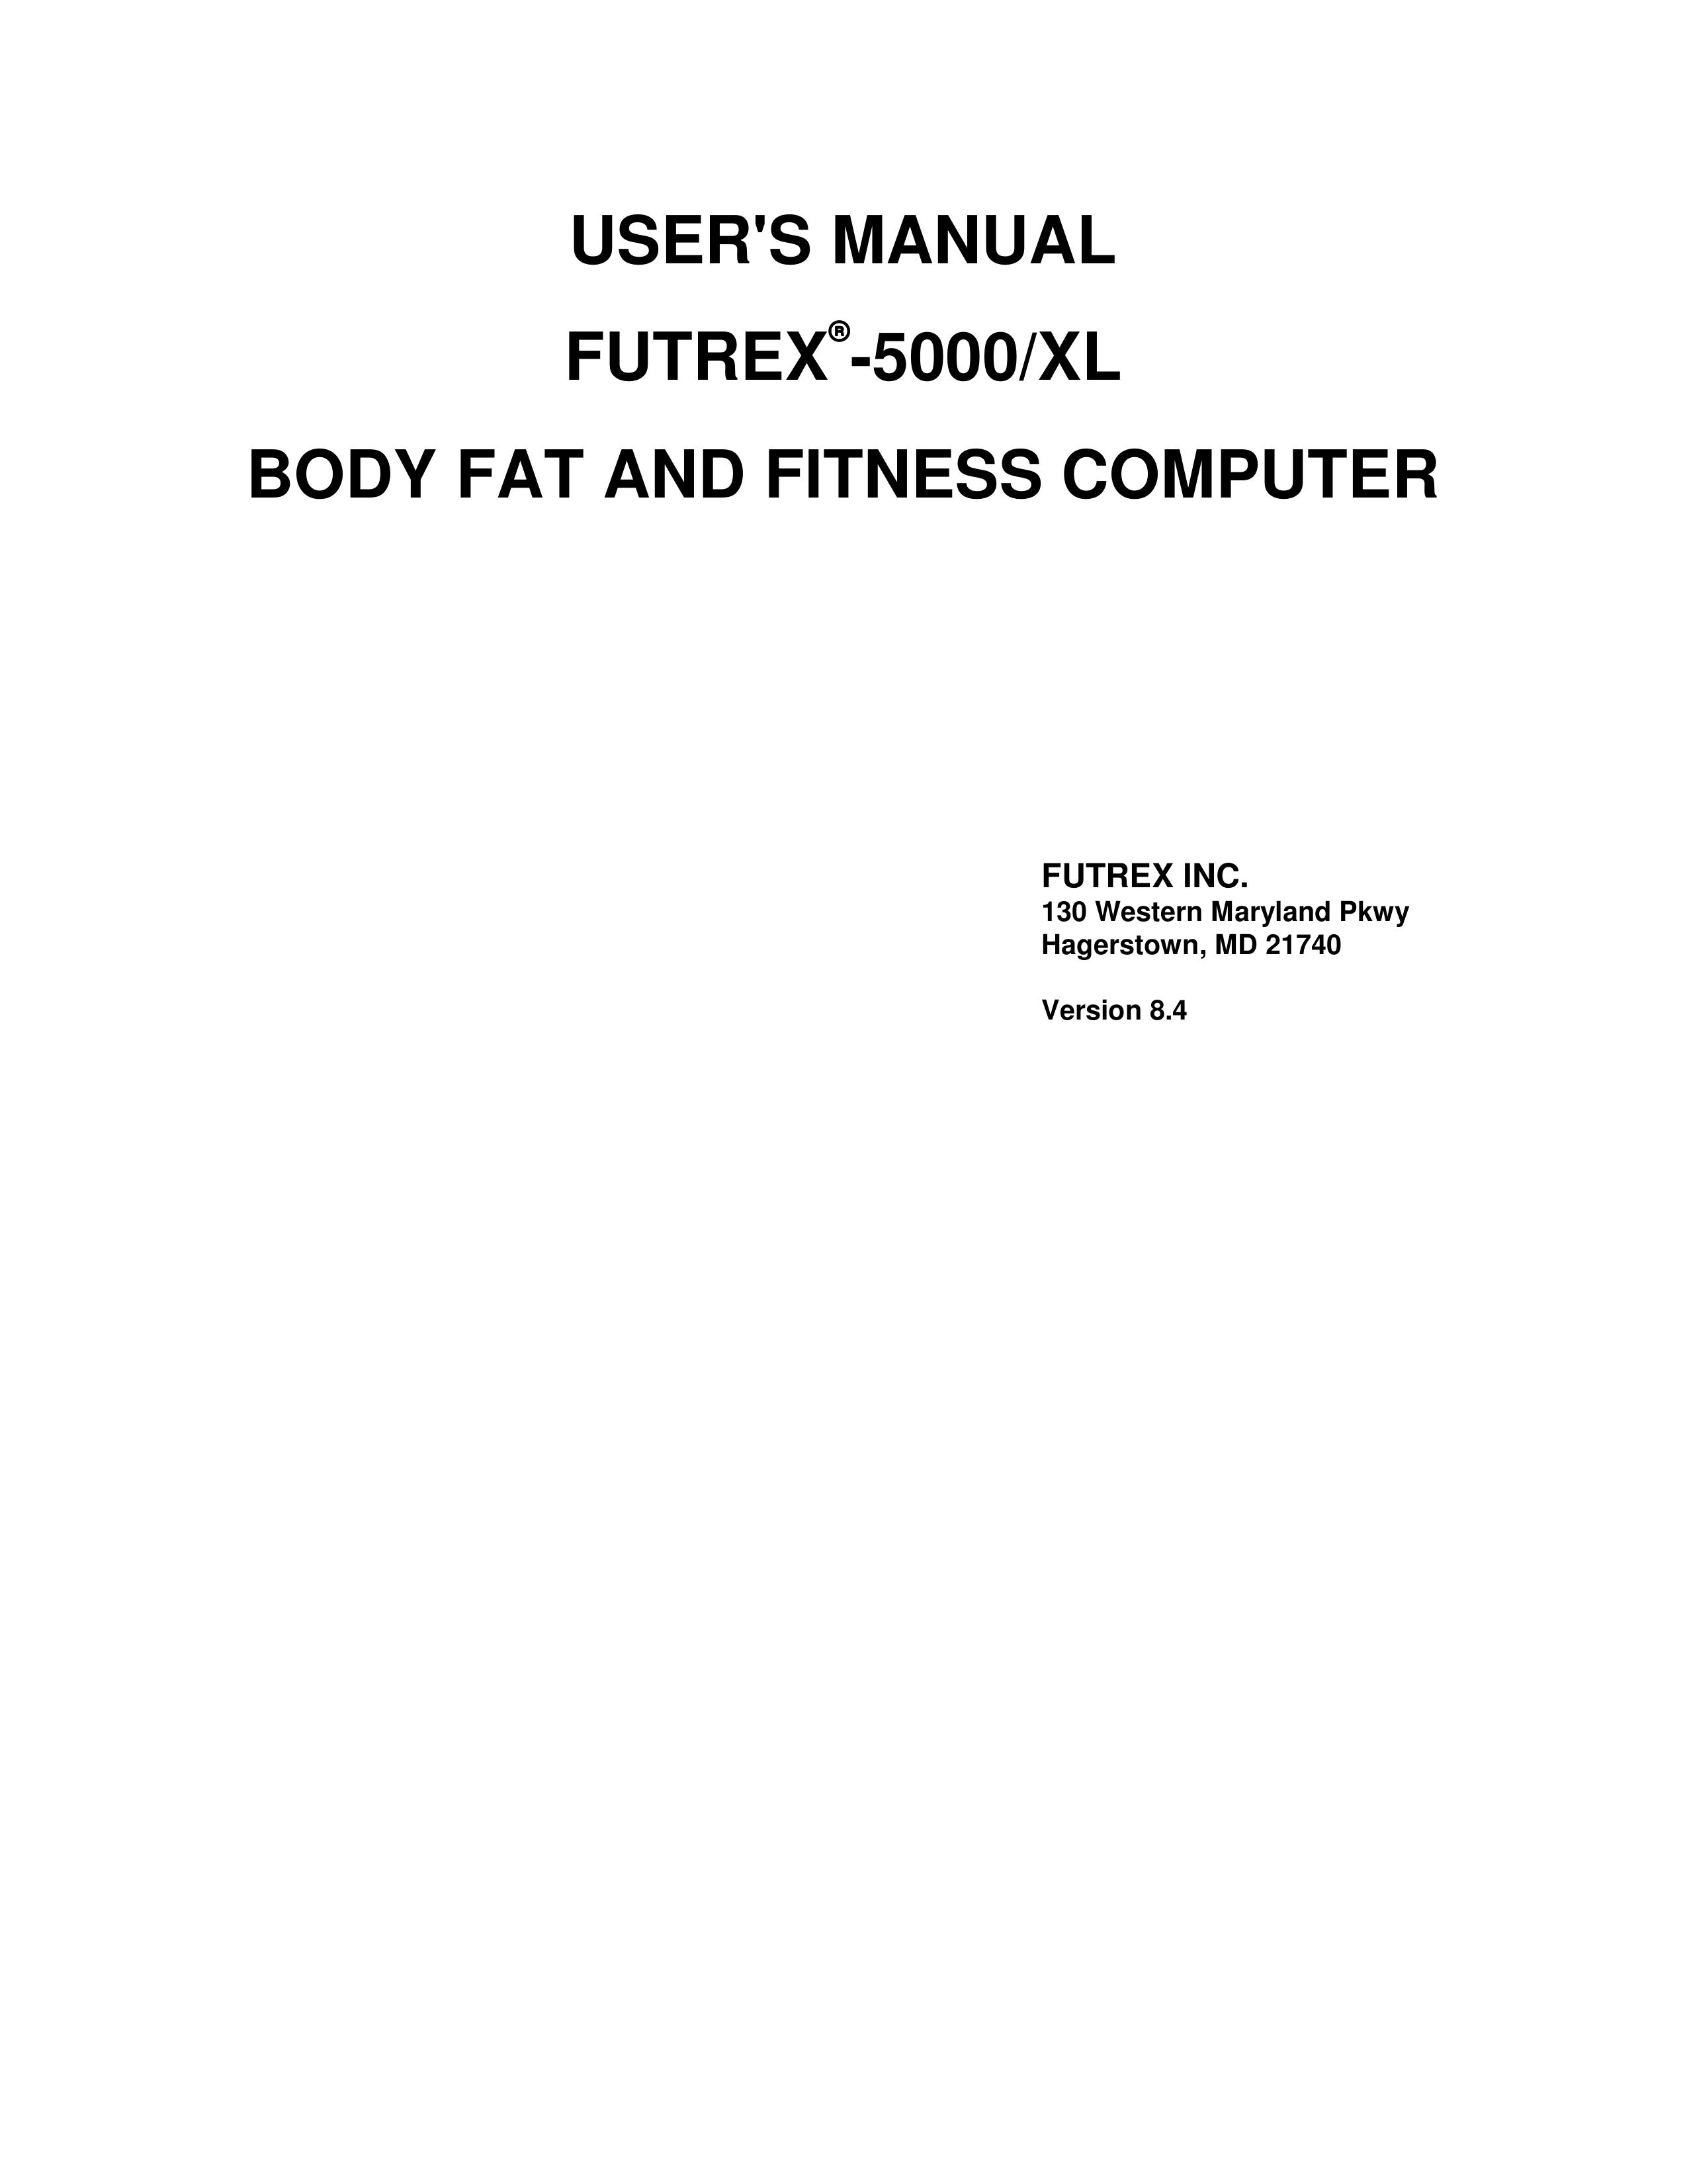 Futrex Futrex -5000/XL Scale User Manual